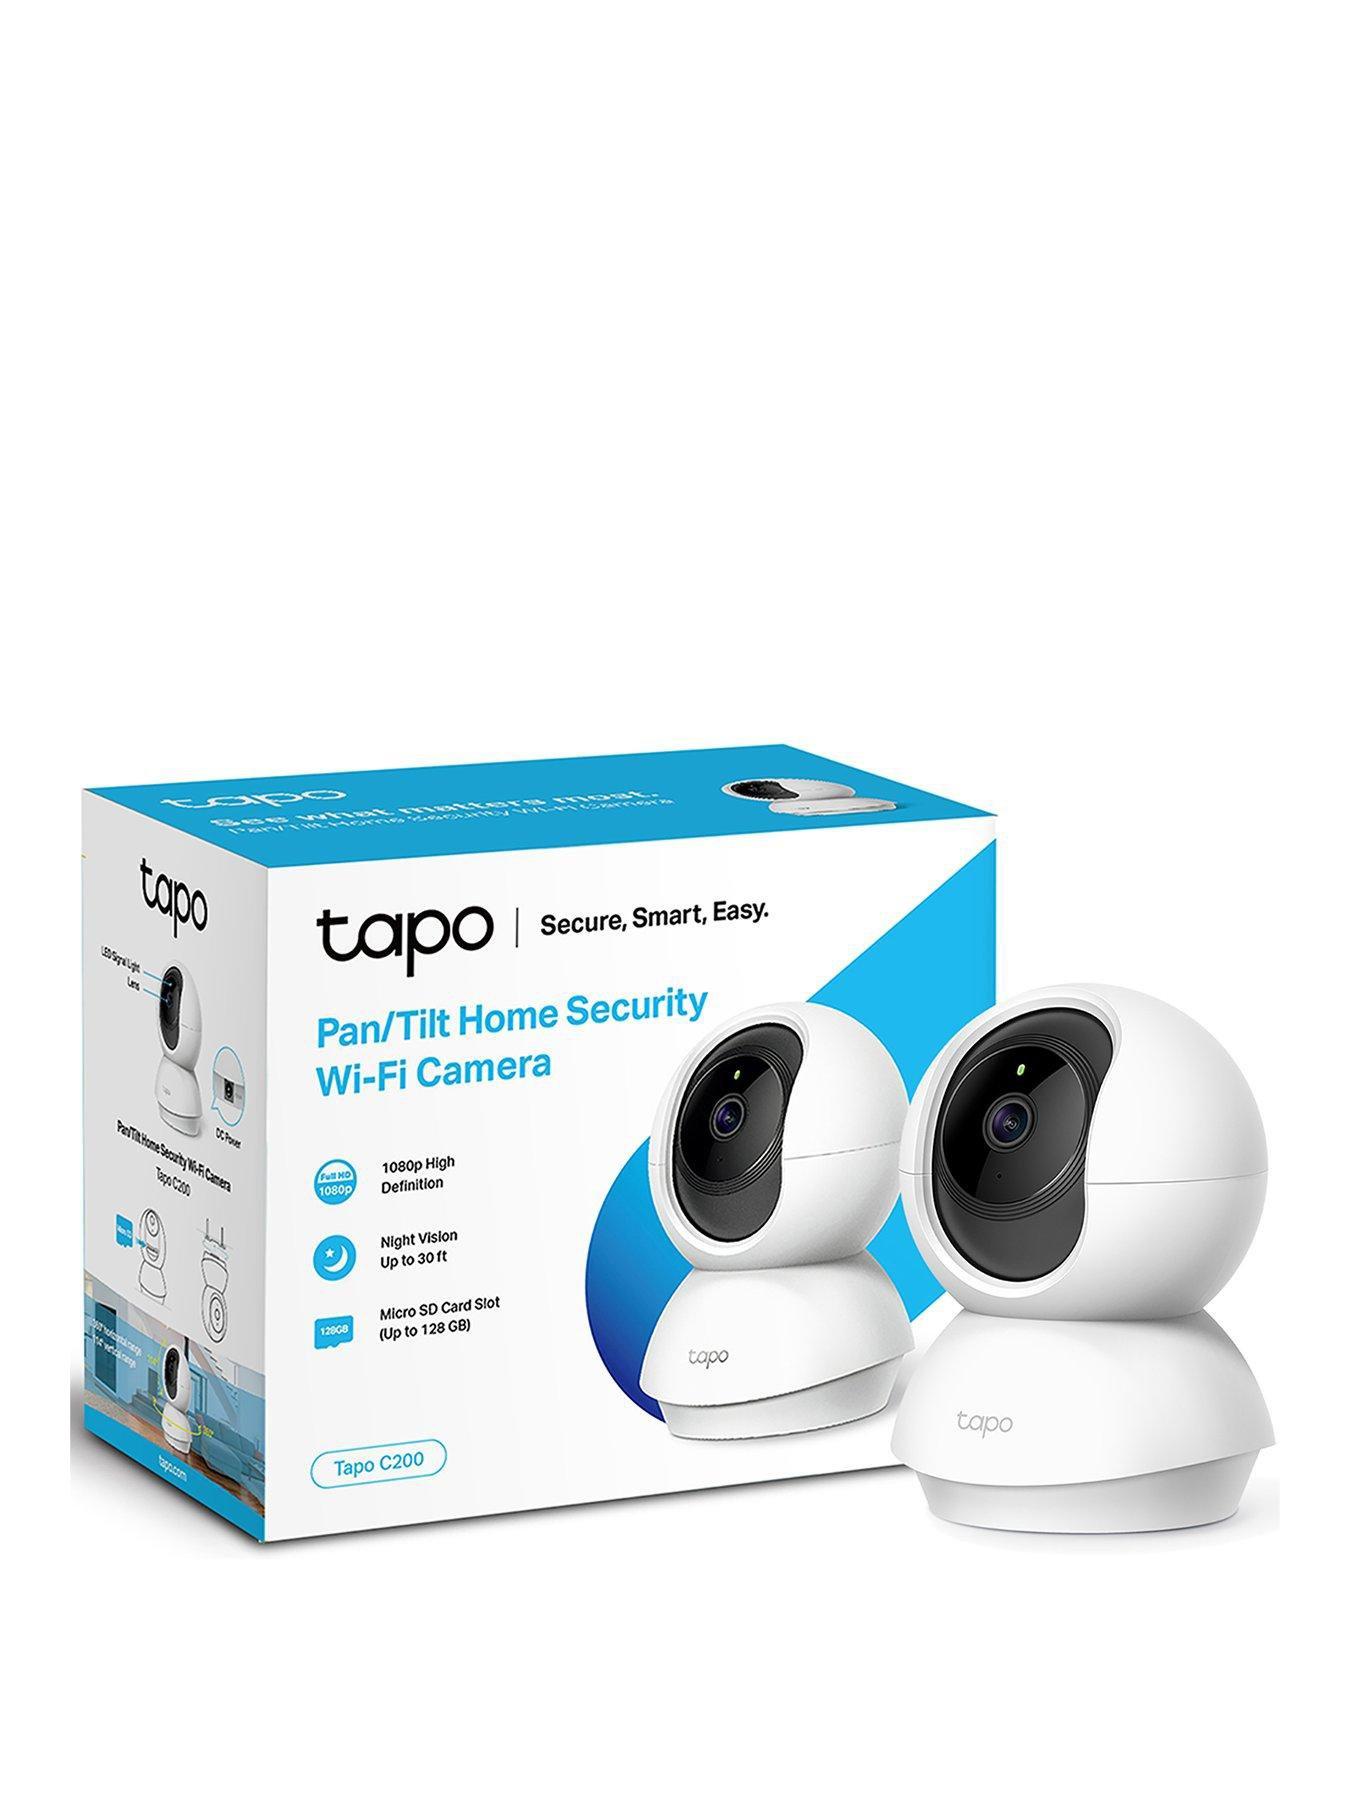 Comprar TP-LINK Tapo L510E - Conexión Wi-Fi - App Tapo